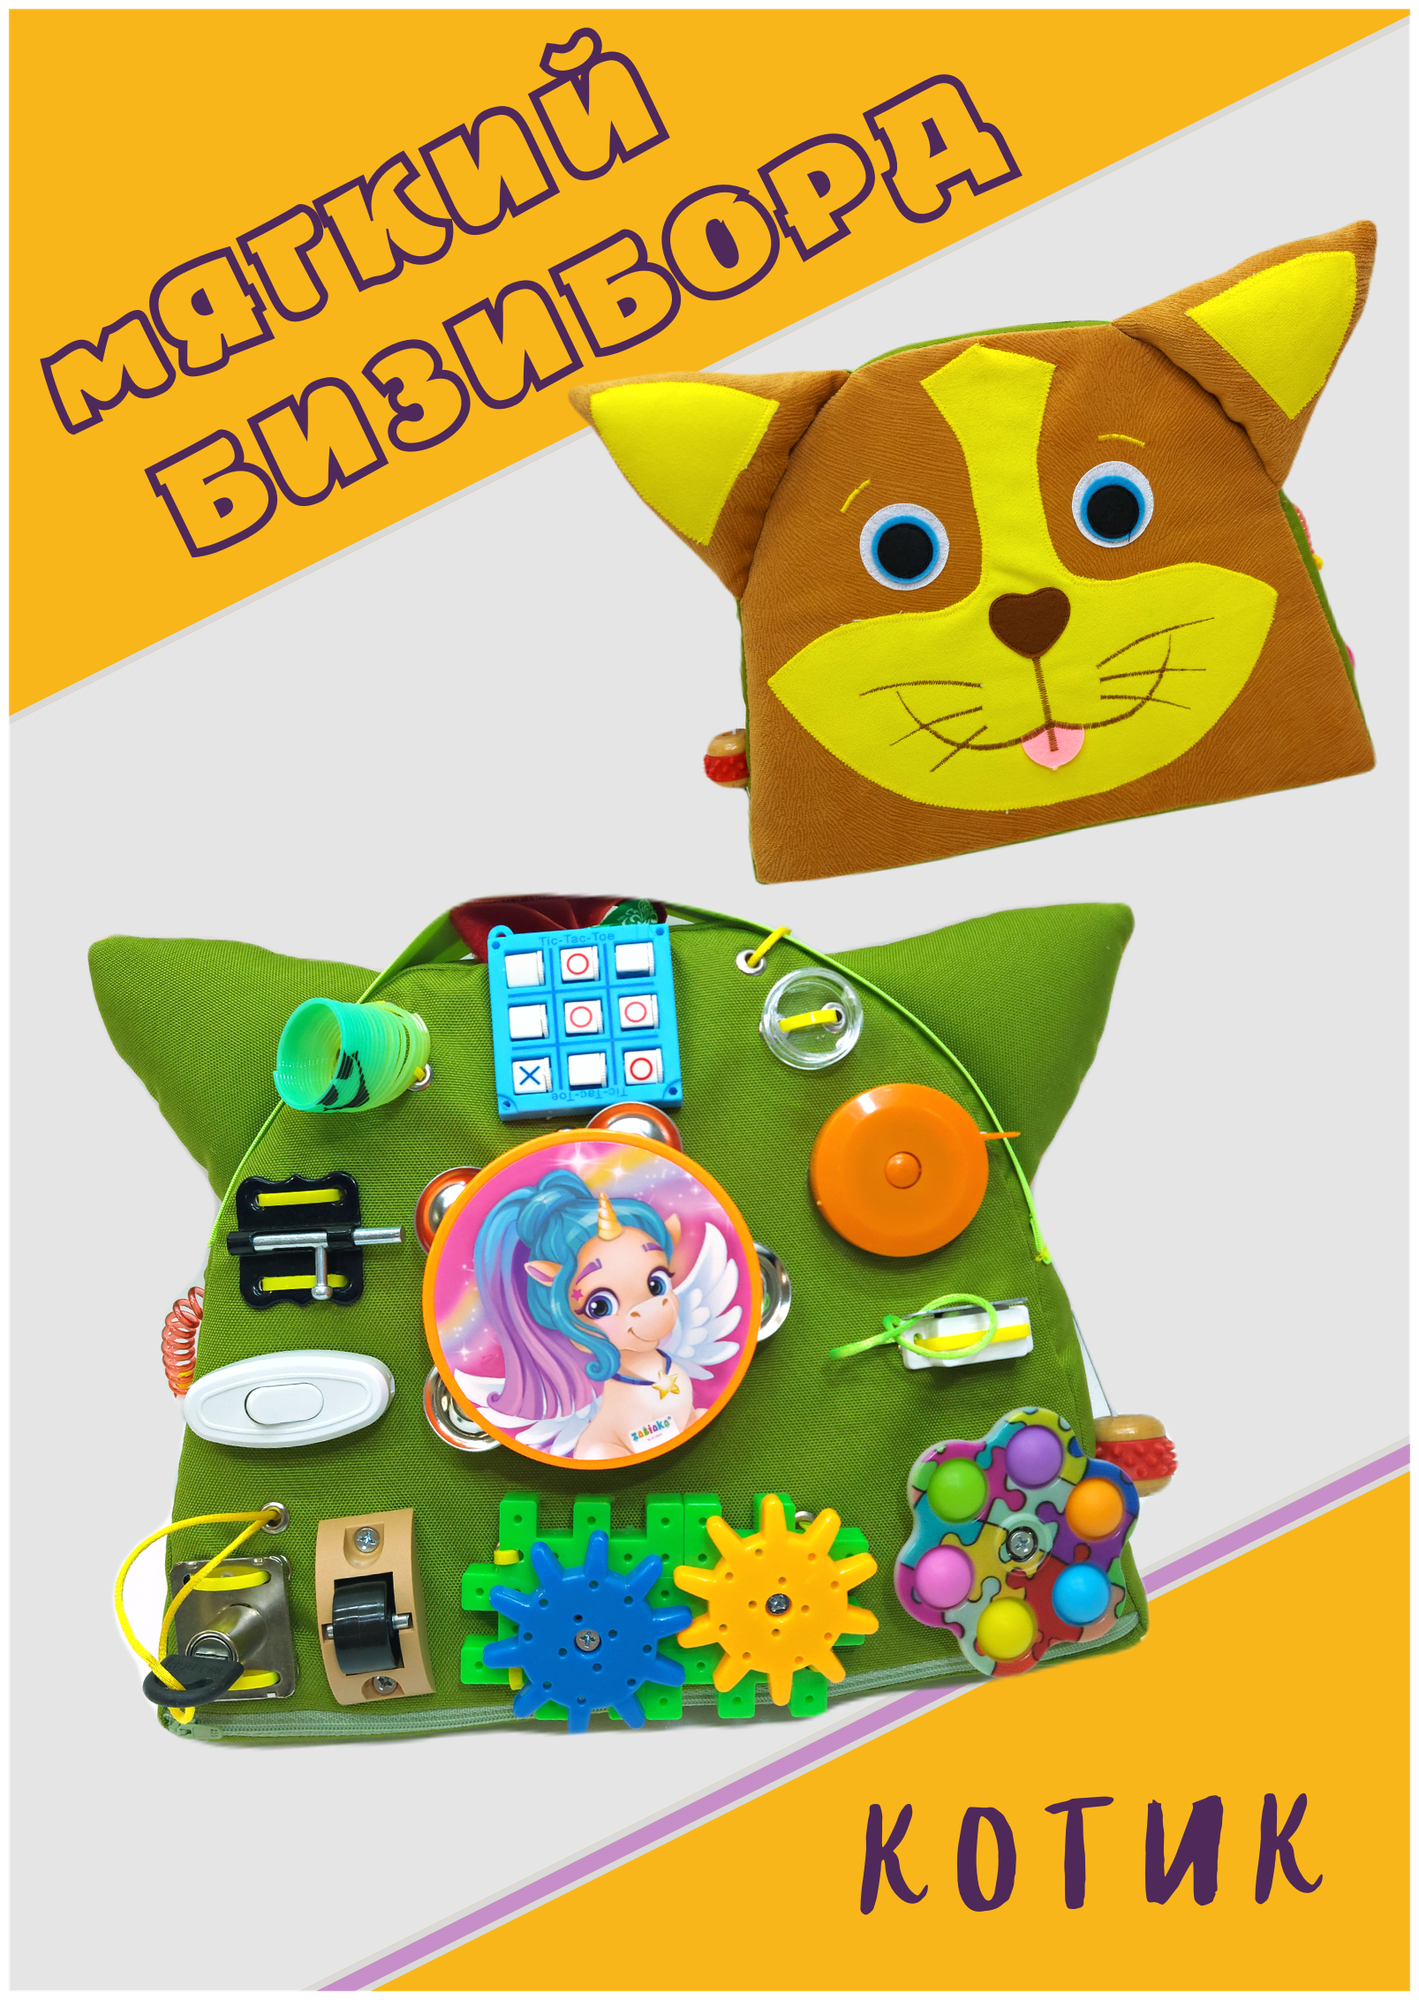 Мягкий бизиборд "Котик-мини" игрушка развивайка в дорогу для детей / Baby bizi